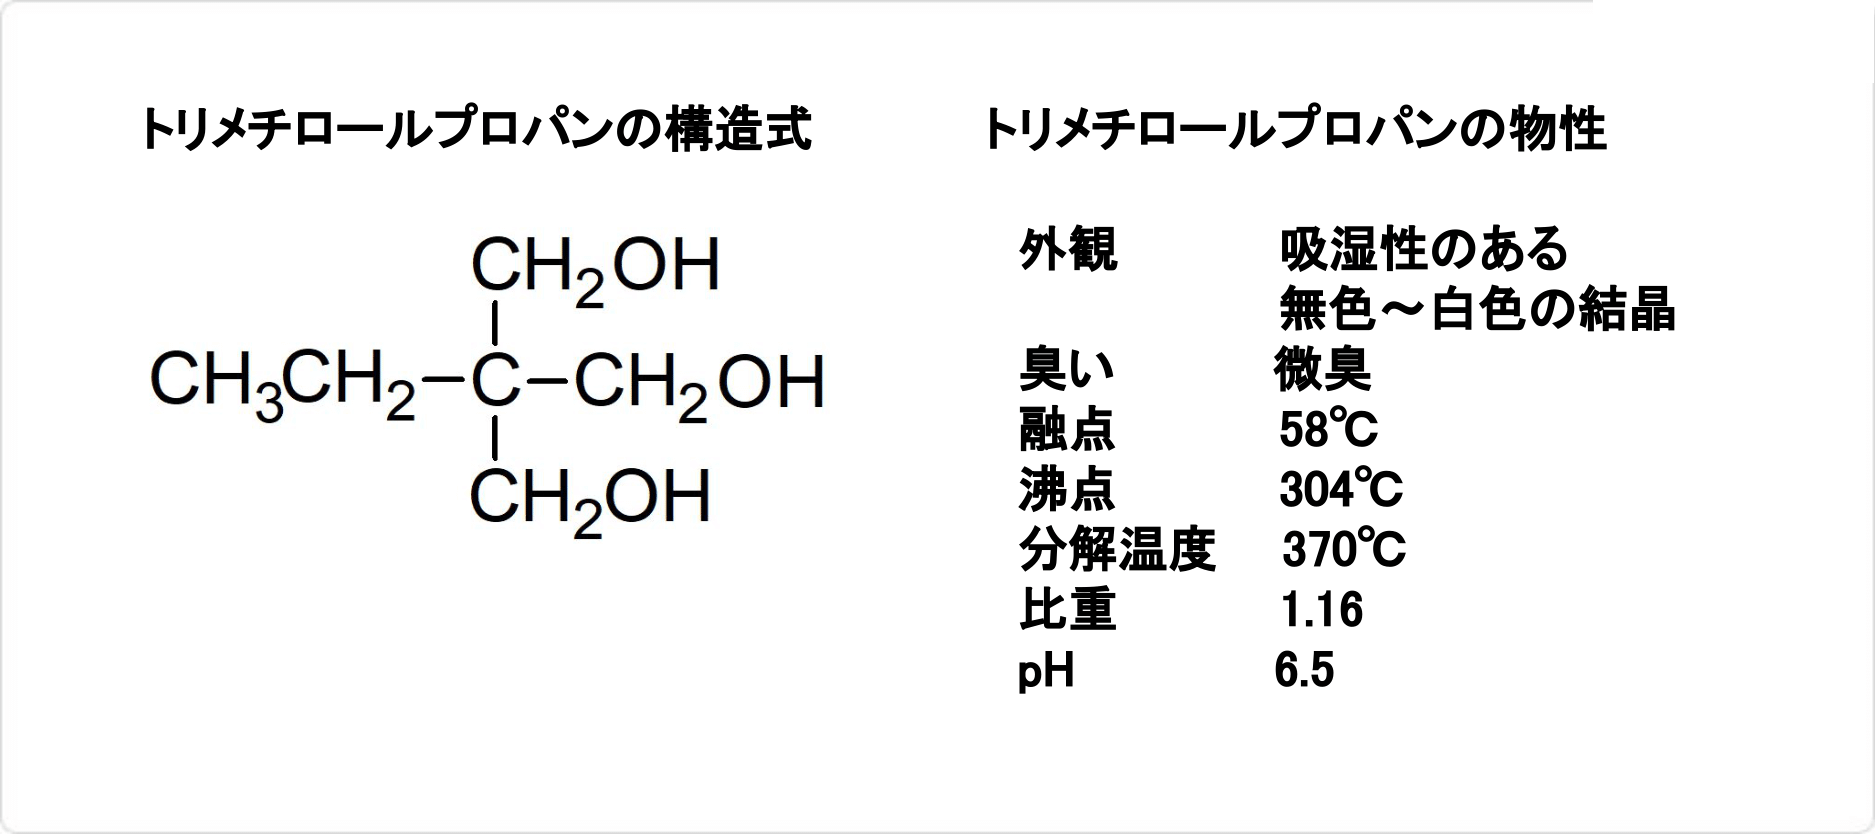 トリメチロールプロパン 99.5% 400g C6H14O3 CH3CH2C(CH2OH)3 TMP 工業用グレード 有機化合物標本 試薬 トリオール